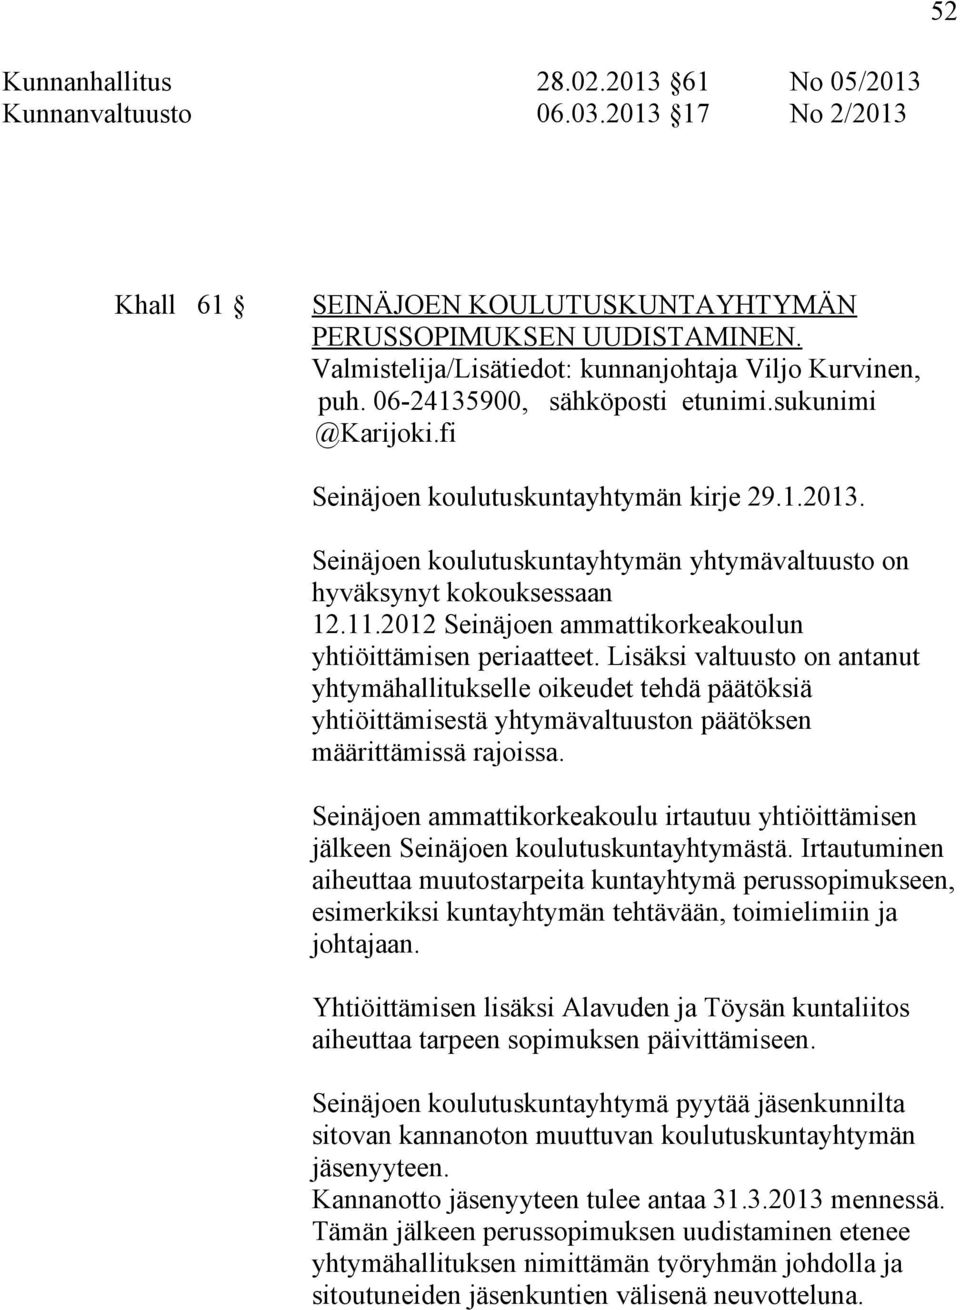 Seinäjoen koulutuskuntayhtymän yhtymävaltuusto on hyväksynyt kokouksessaan 12.11.2012 Seinäjoen ammattikorkeakoulun yhtiöittämisen periaatteet.